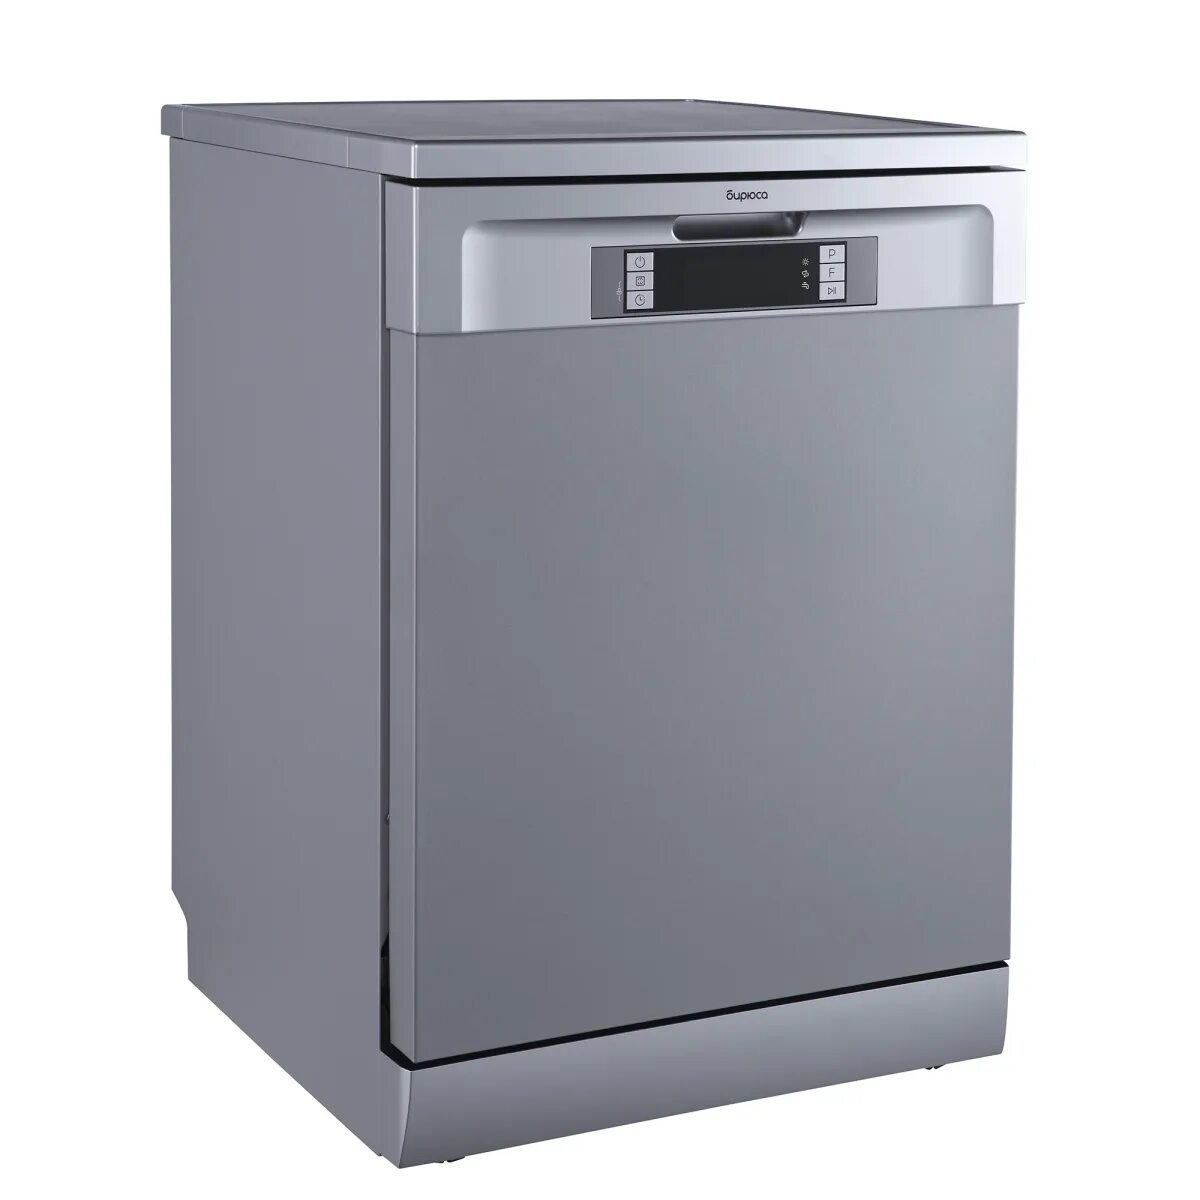 Посудомоечная машина бирюса купить. Посудомоечная машина 60 см Бирюса DWF-614/6 M. Посудомоечная машина Бирюса DWF-612/6 W. Бирюса DWF-614/6 M посудомоечная машина 60 см в интерьере. Посудомойка Бирюса.